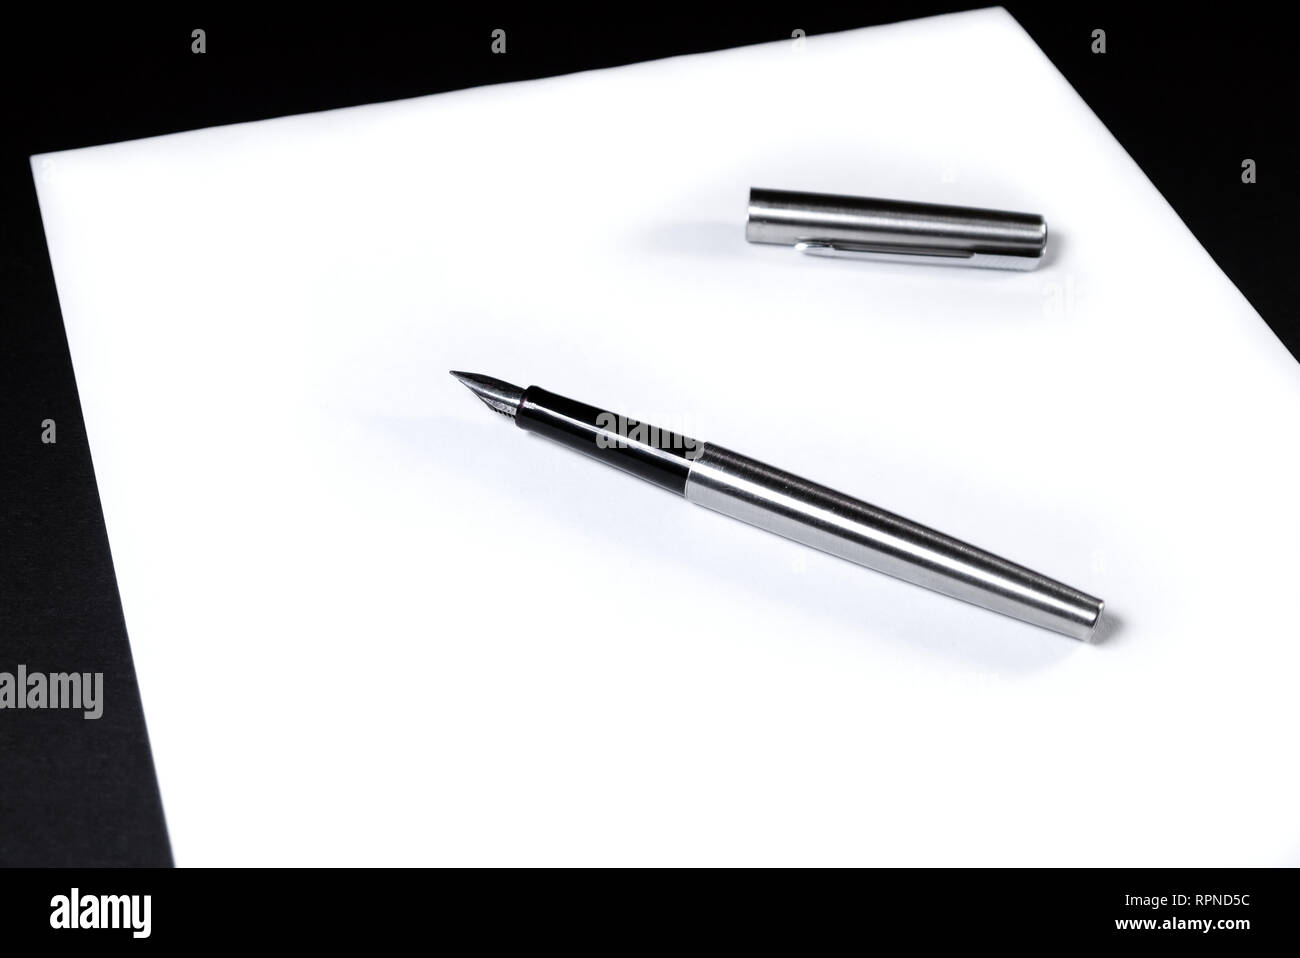 Auf einem weißen Blatt Papier ist ein Kugelschreiber mit einer Kappe.  Schwarzer Hintergrund Stockfotografie - Alamy